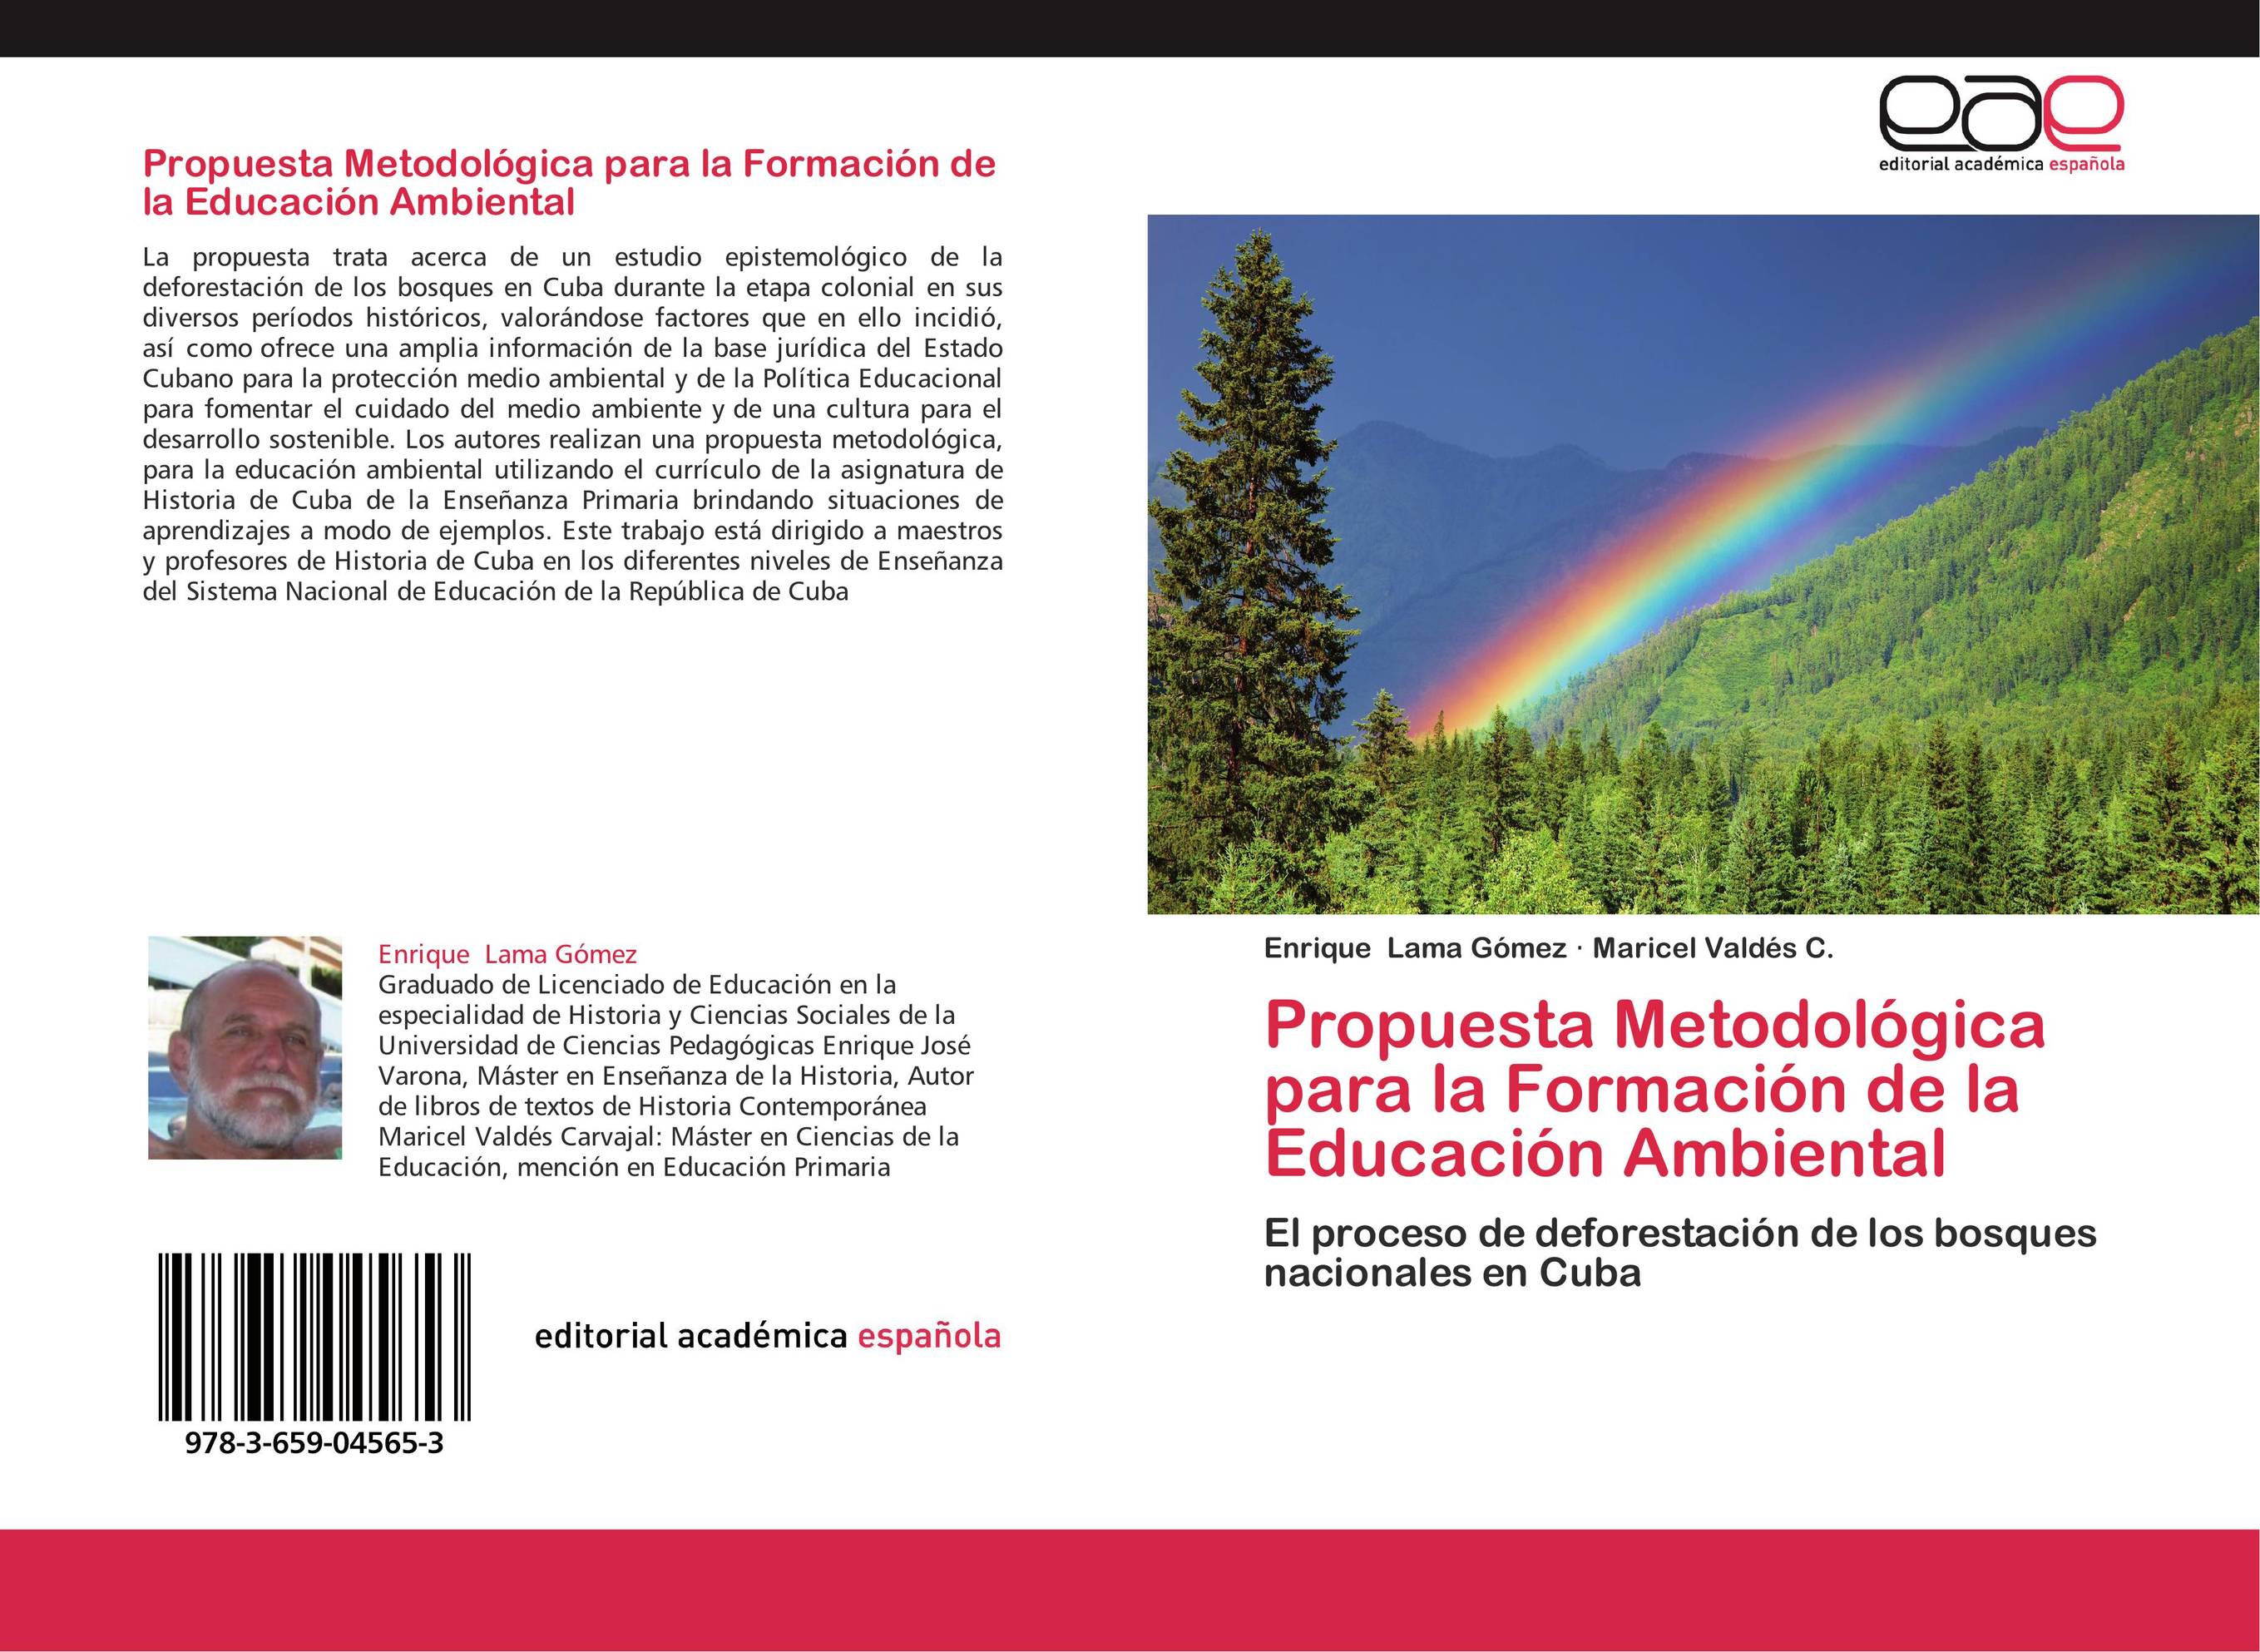 Propuesta Metodológica para la Formación de la Educación Ambiental